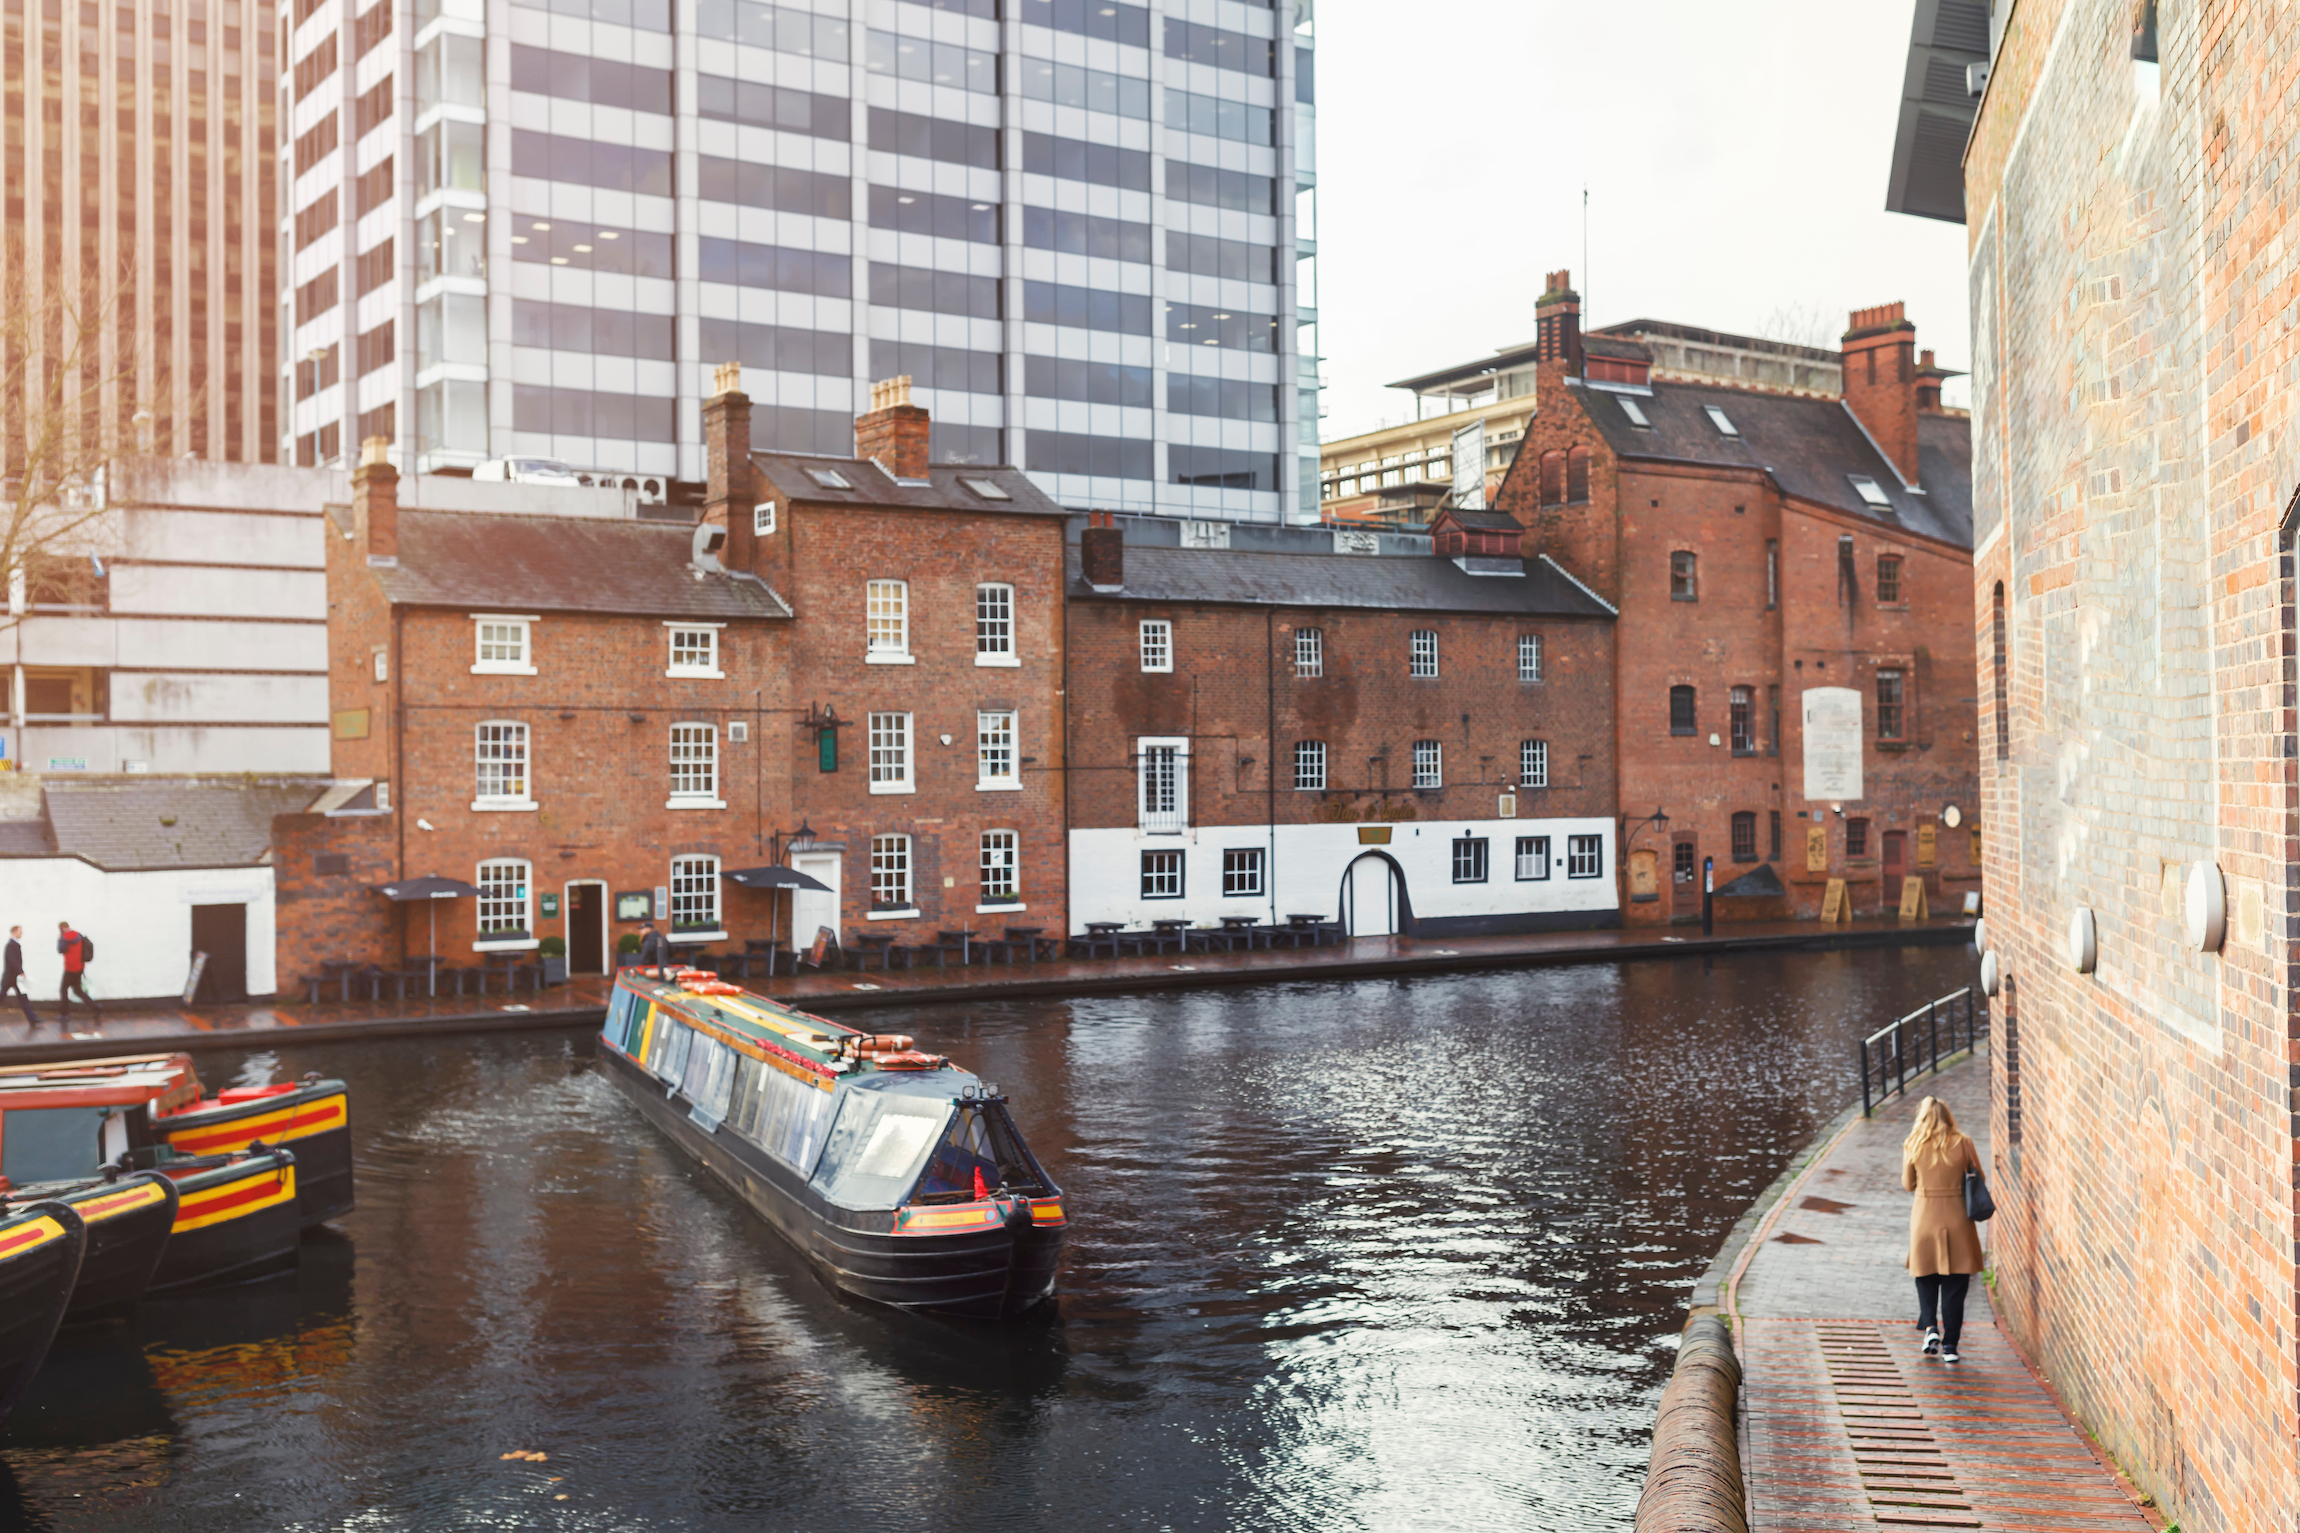 Poza niesamowitymi możliwościami zwiedzania oferowanymi przez wodne taksówki podróżujące po kanałach Birmingham, można również zobaczyć wyjątkową architekturę zmaterializowaną w domach na brzegu i zadziwiających budynkach